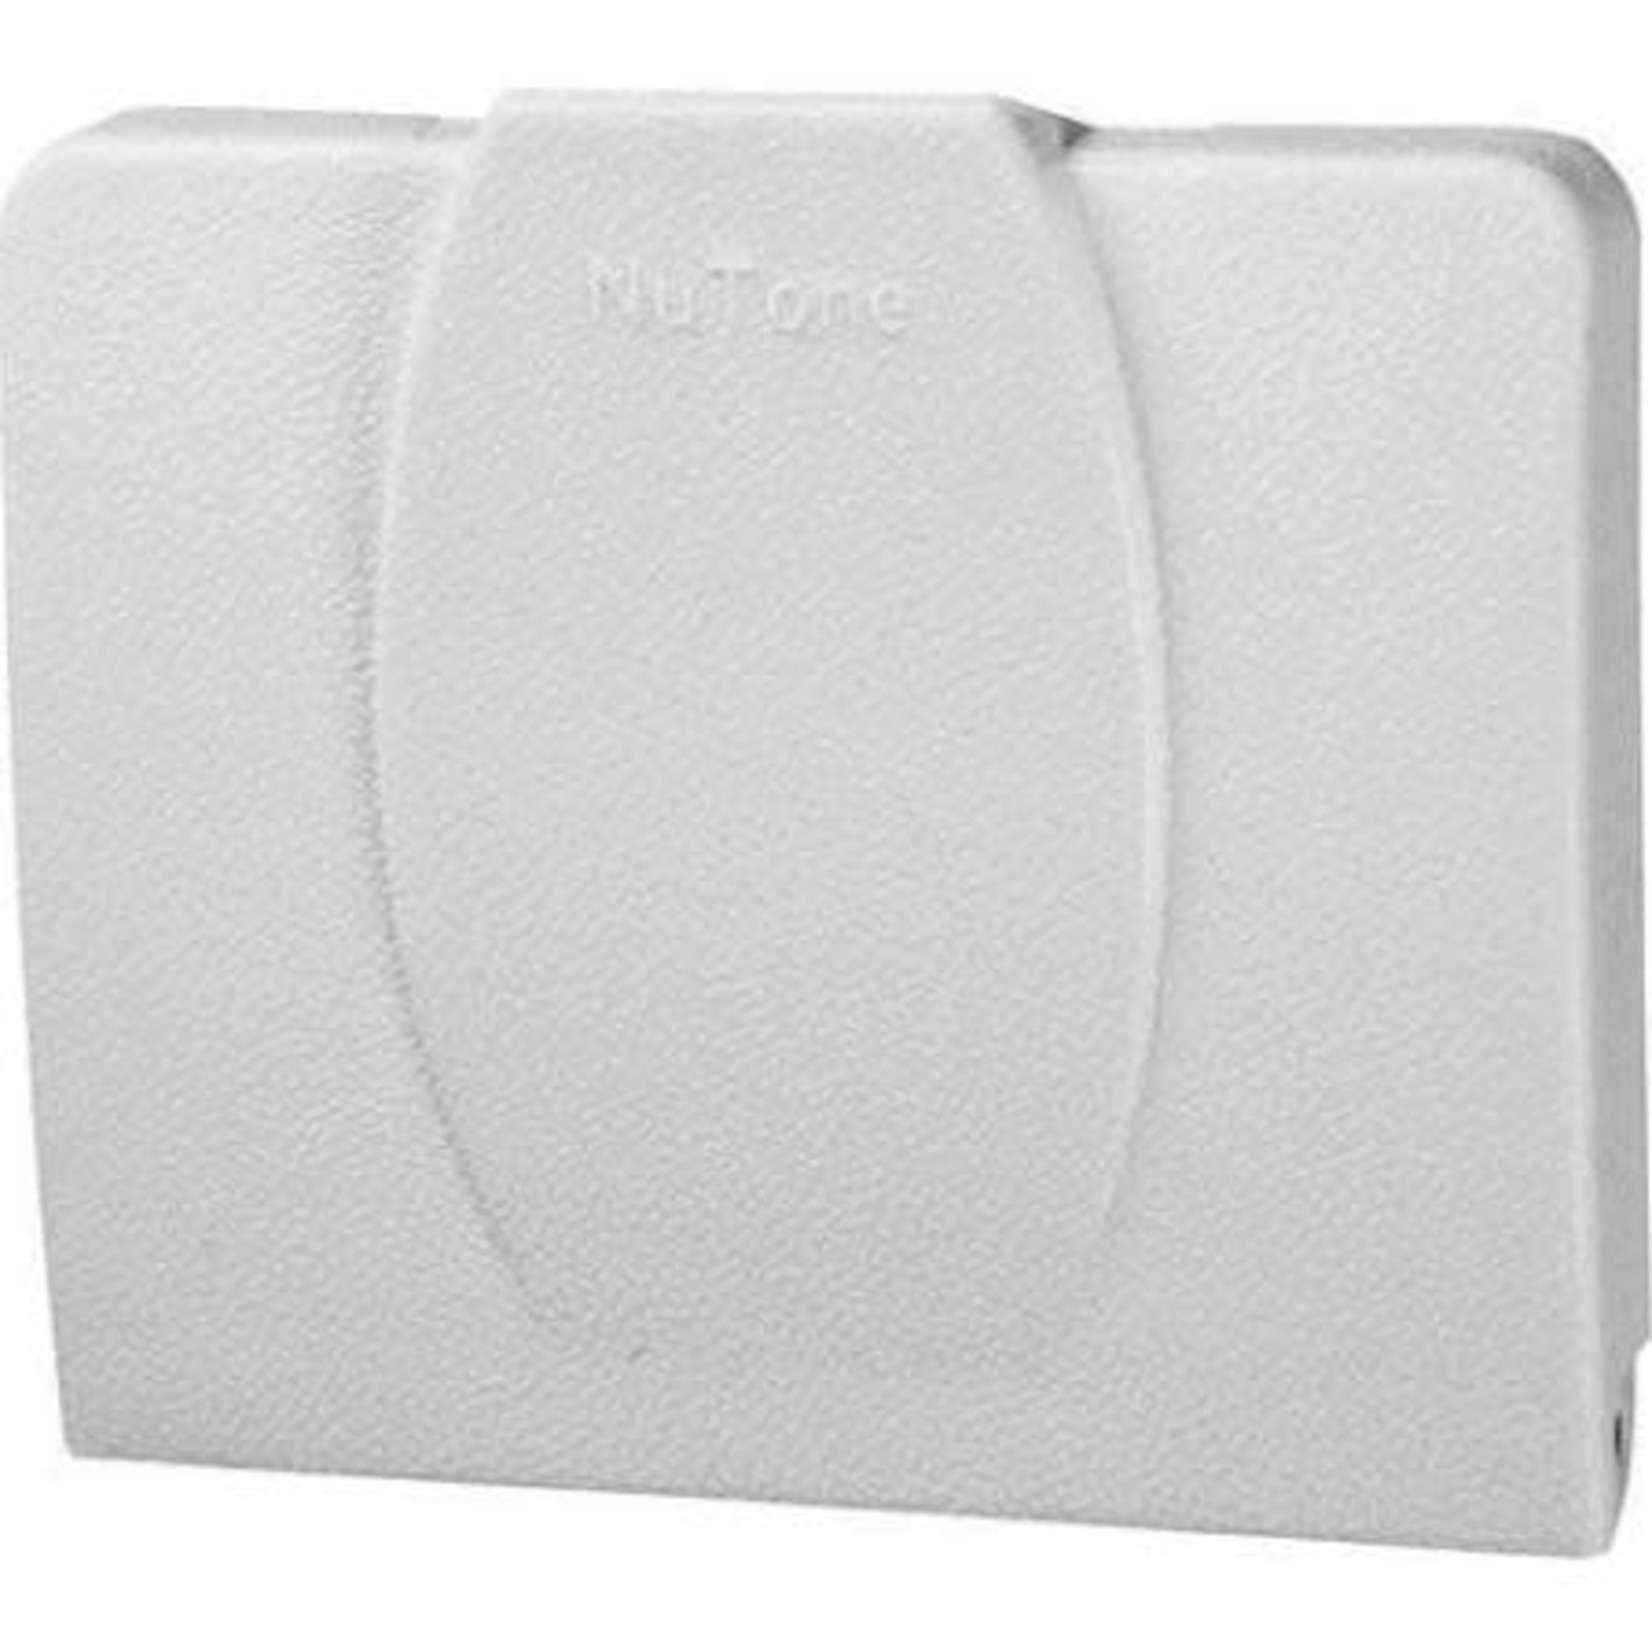 NuTone Nutone White Wall Inlet Valve